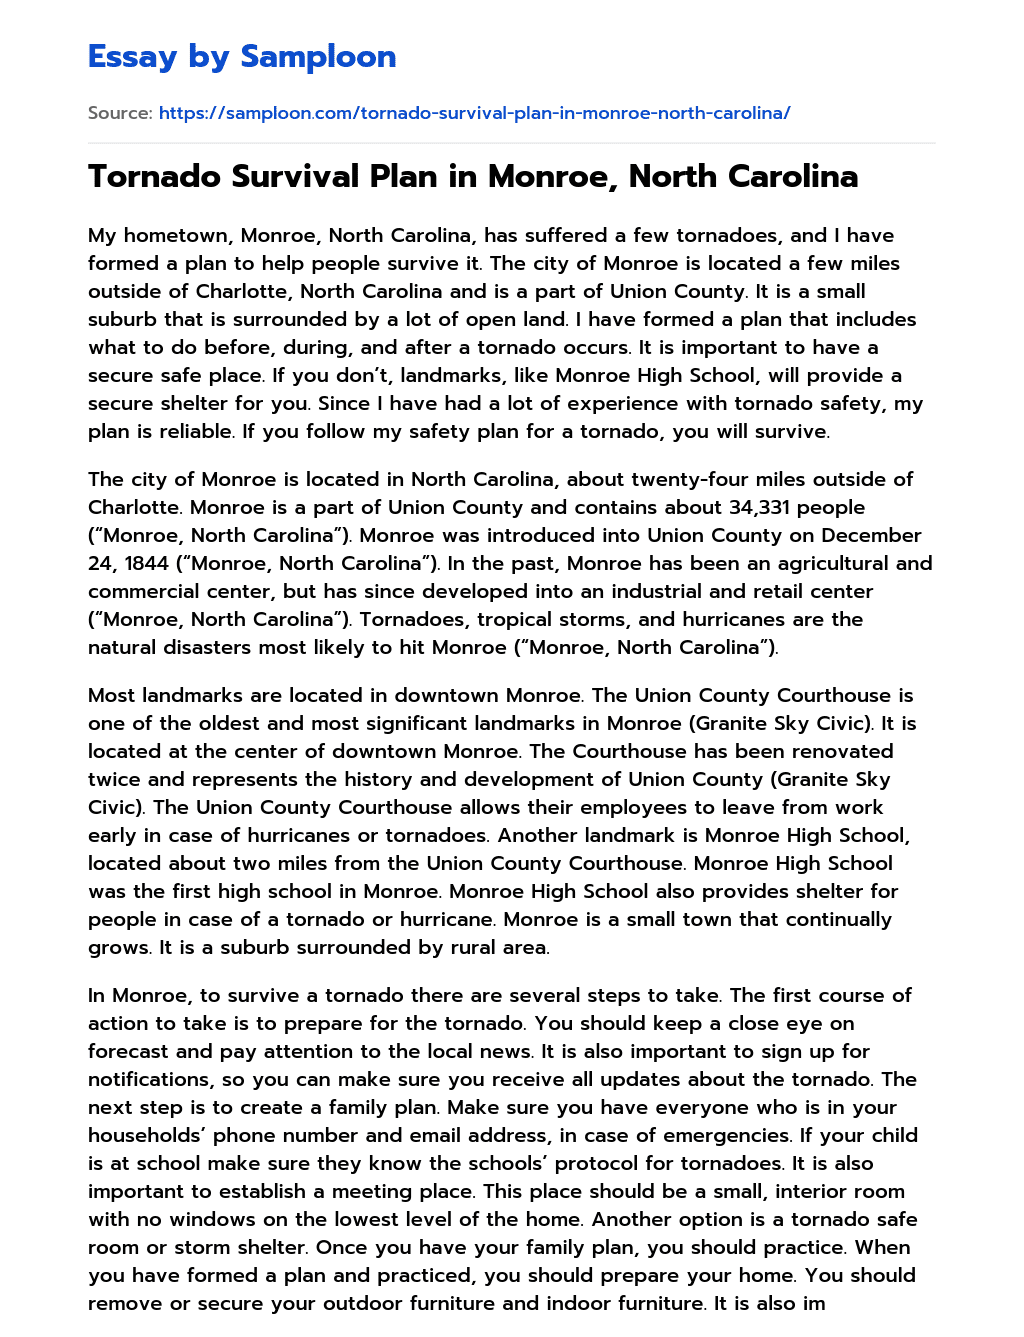 Tornado Survival Plan in Monroe, North Carolina essay